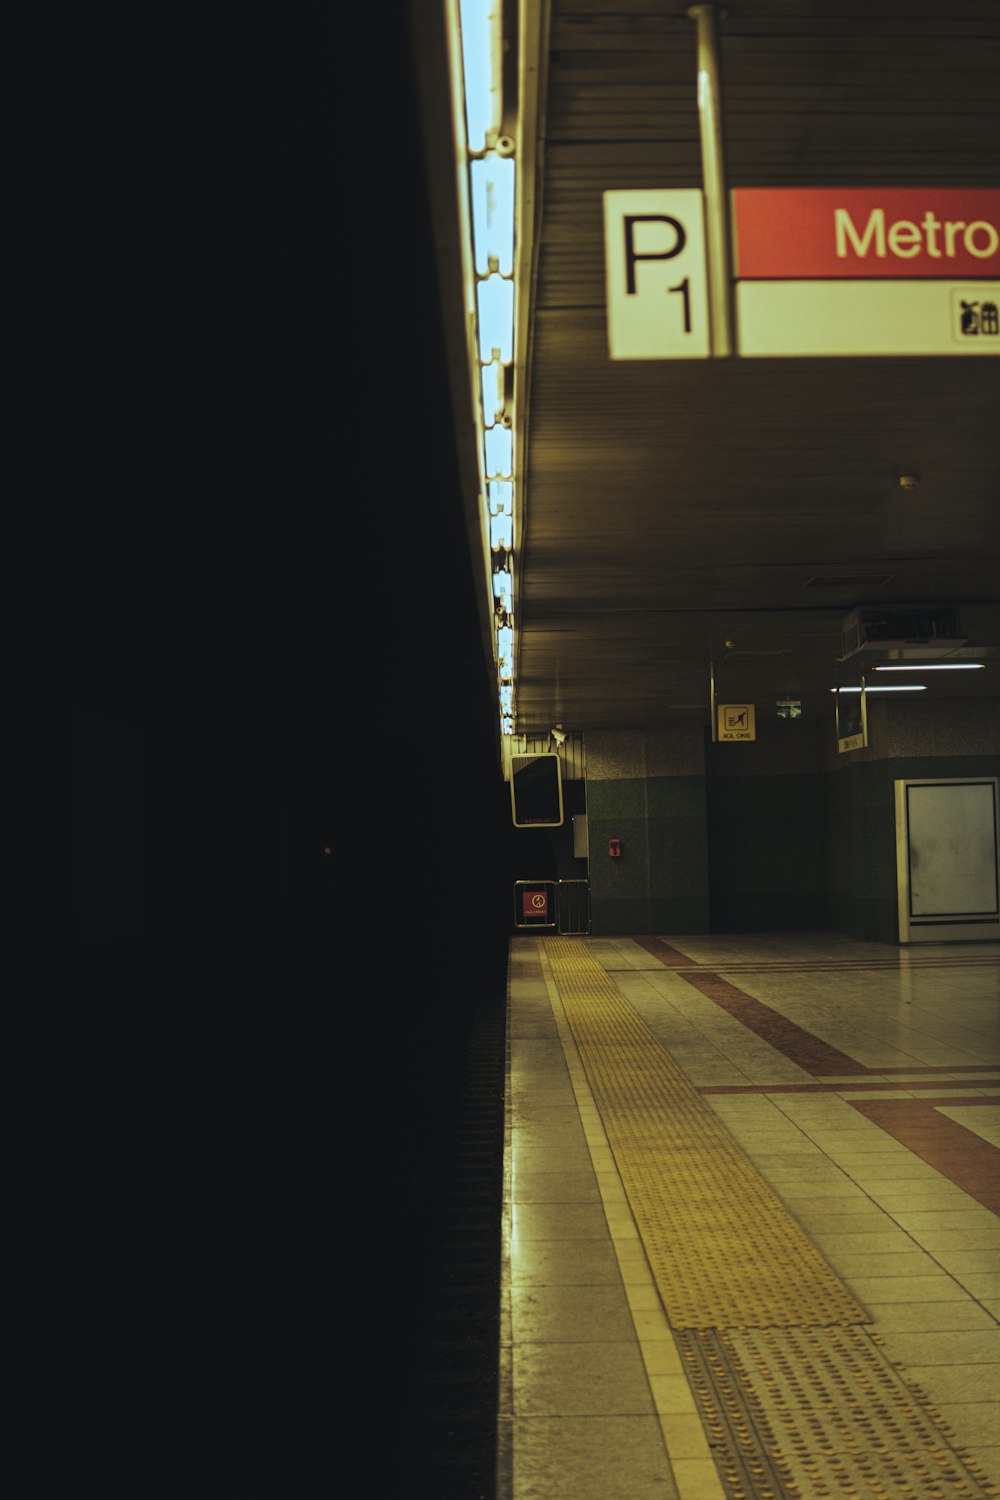 una stazione della metropolitana con un cartello che legge Metro